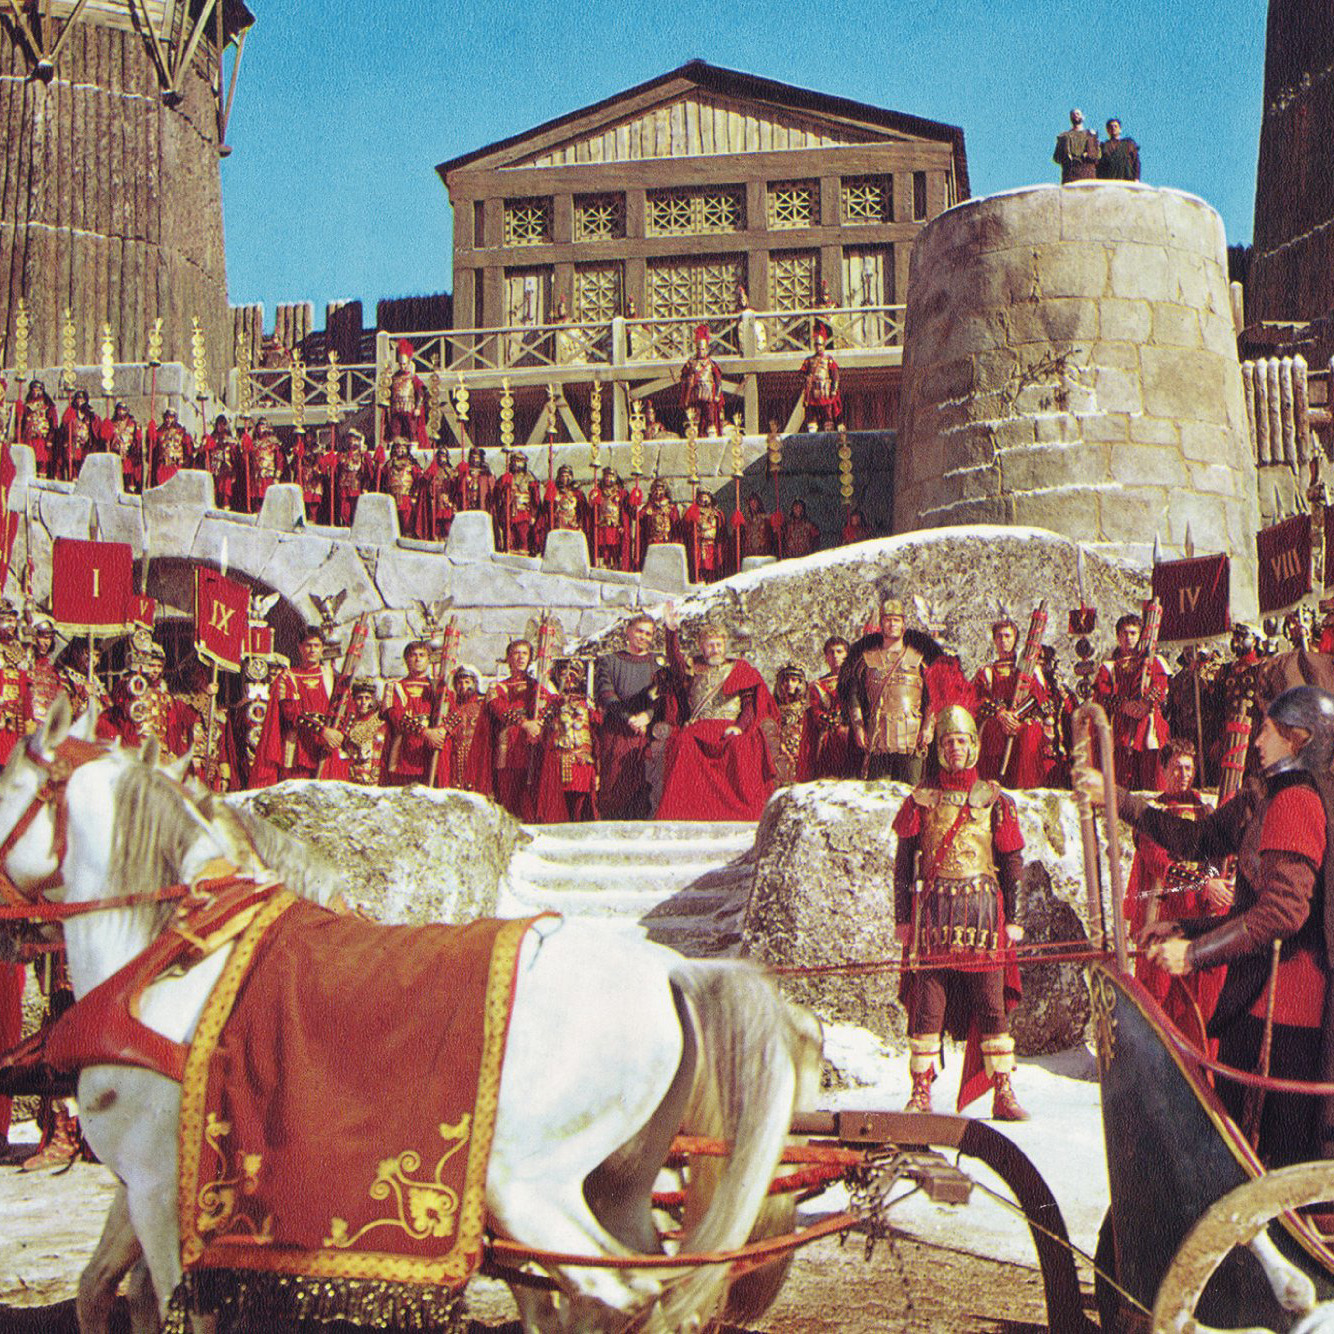 Кризис третьего века Римской империи